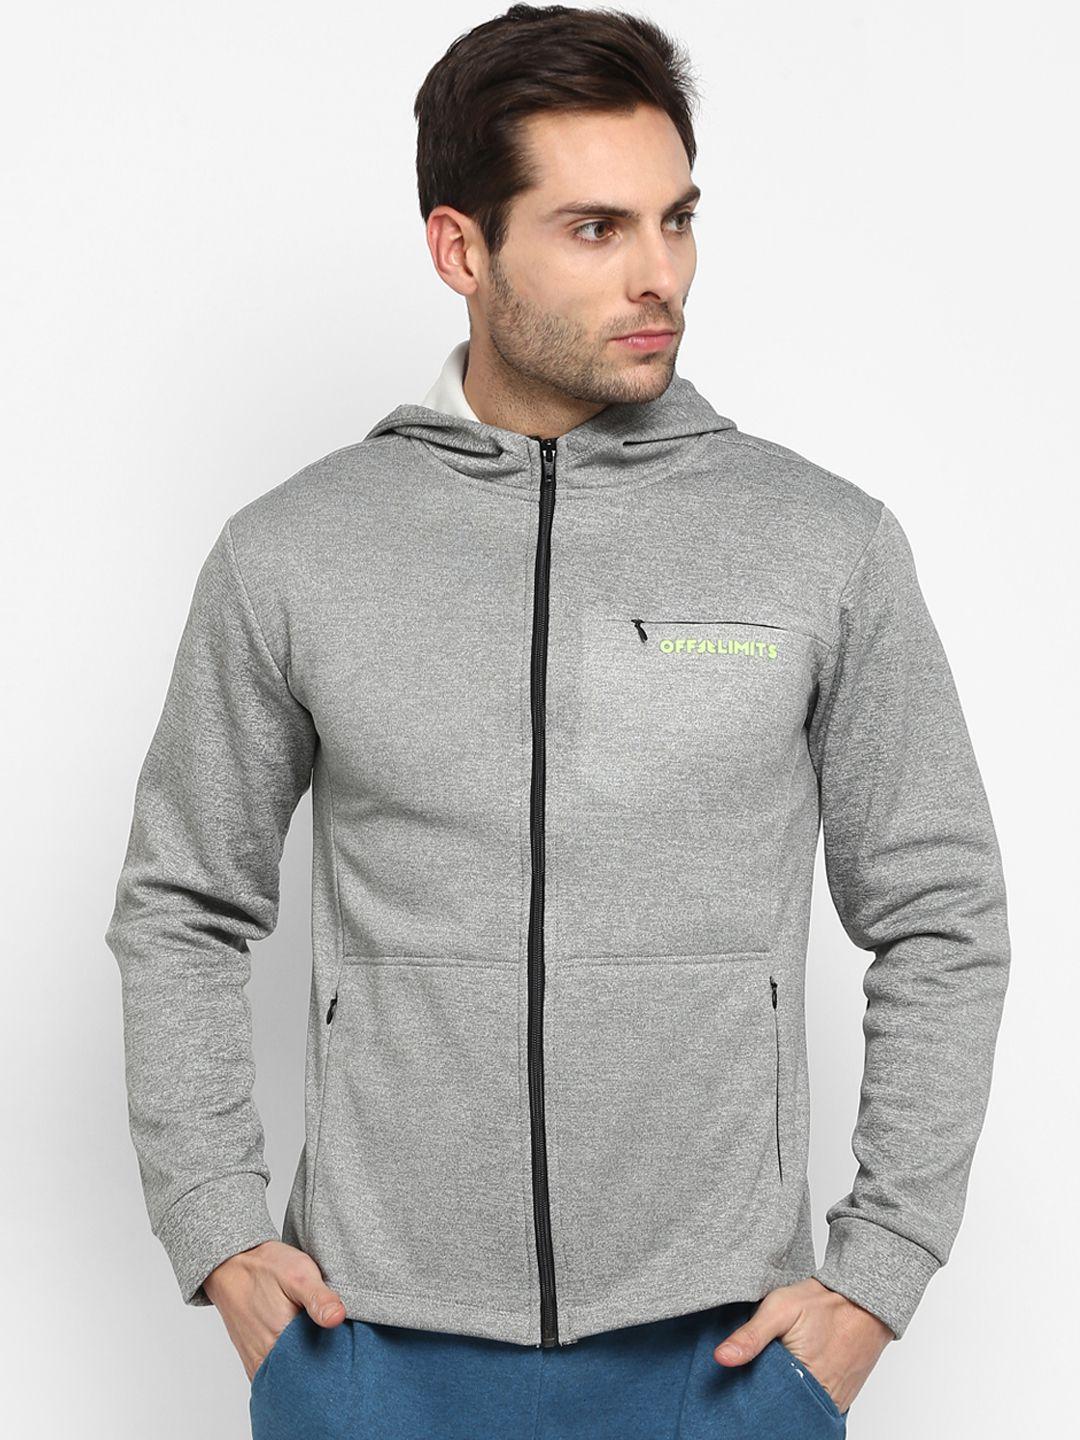 off-limits-men-grey-melange-solid-sporty-jacket